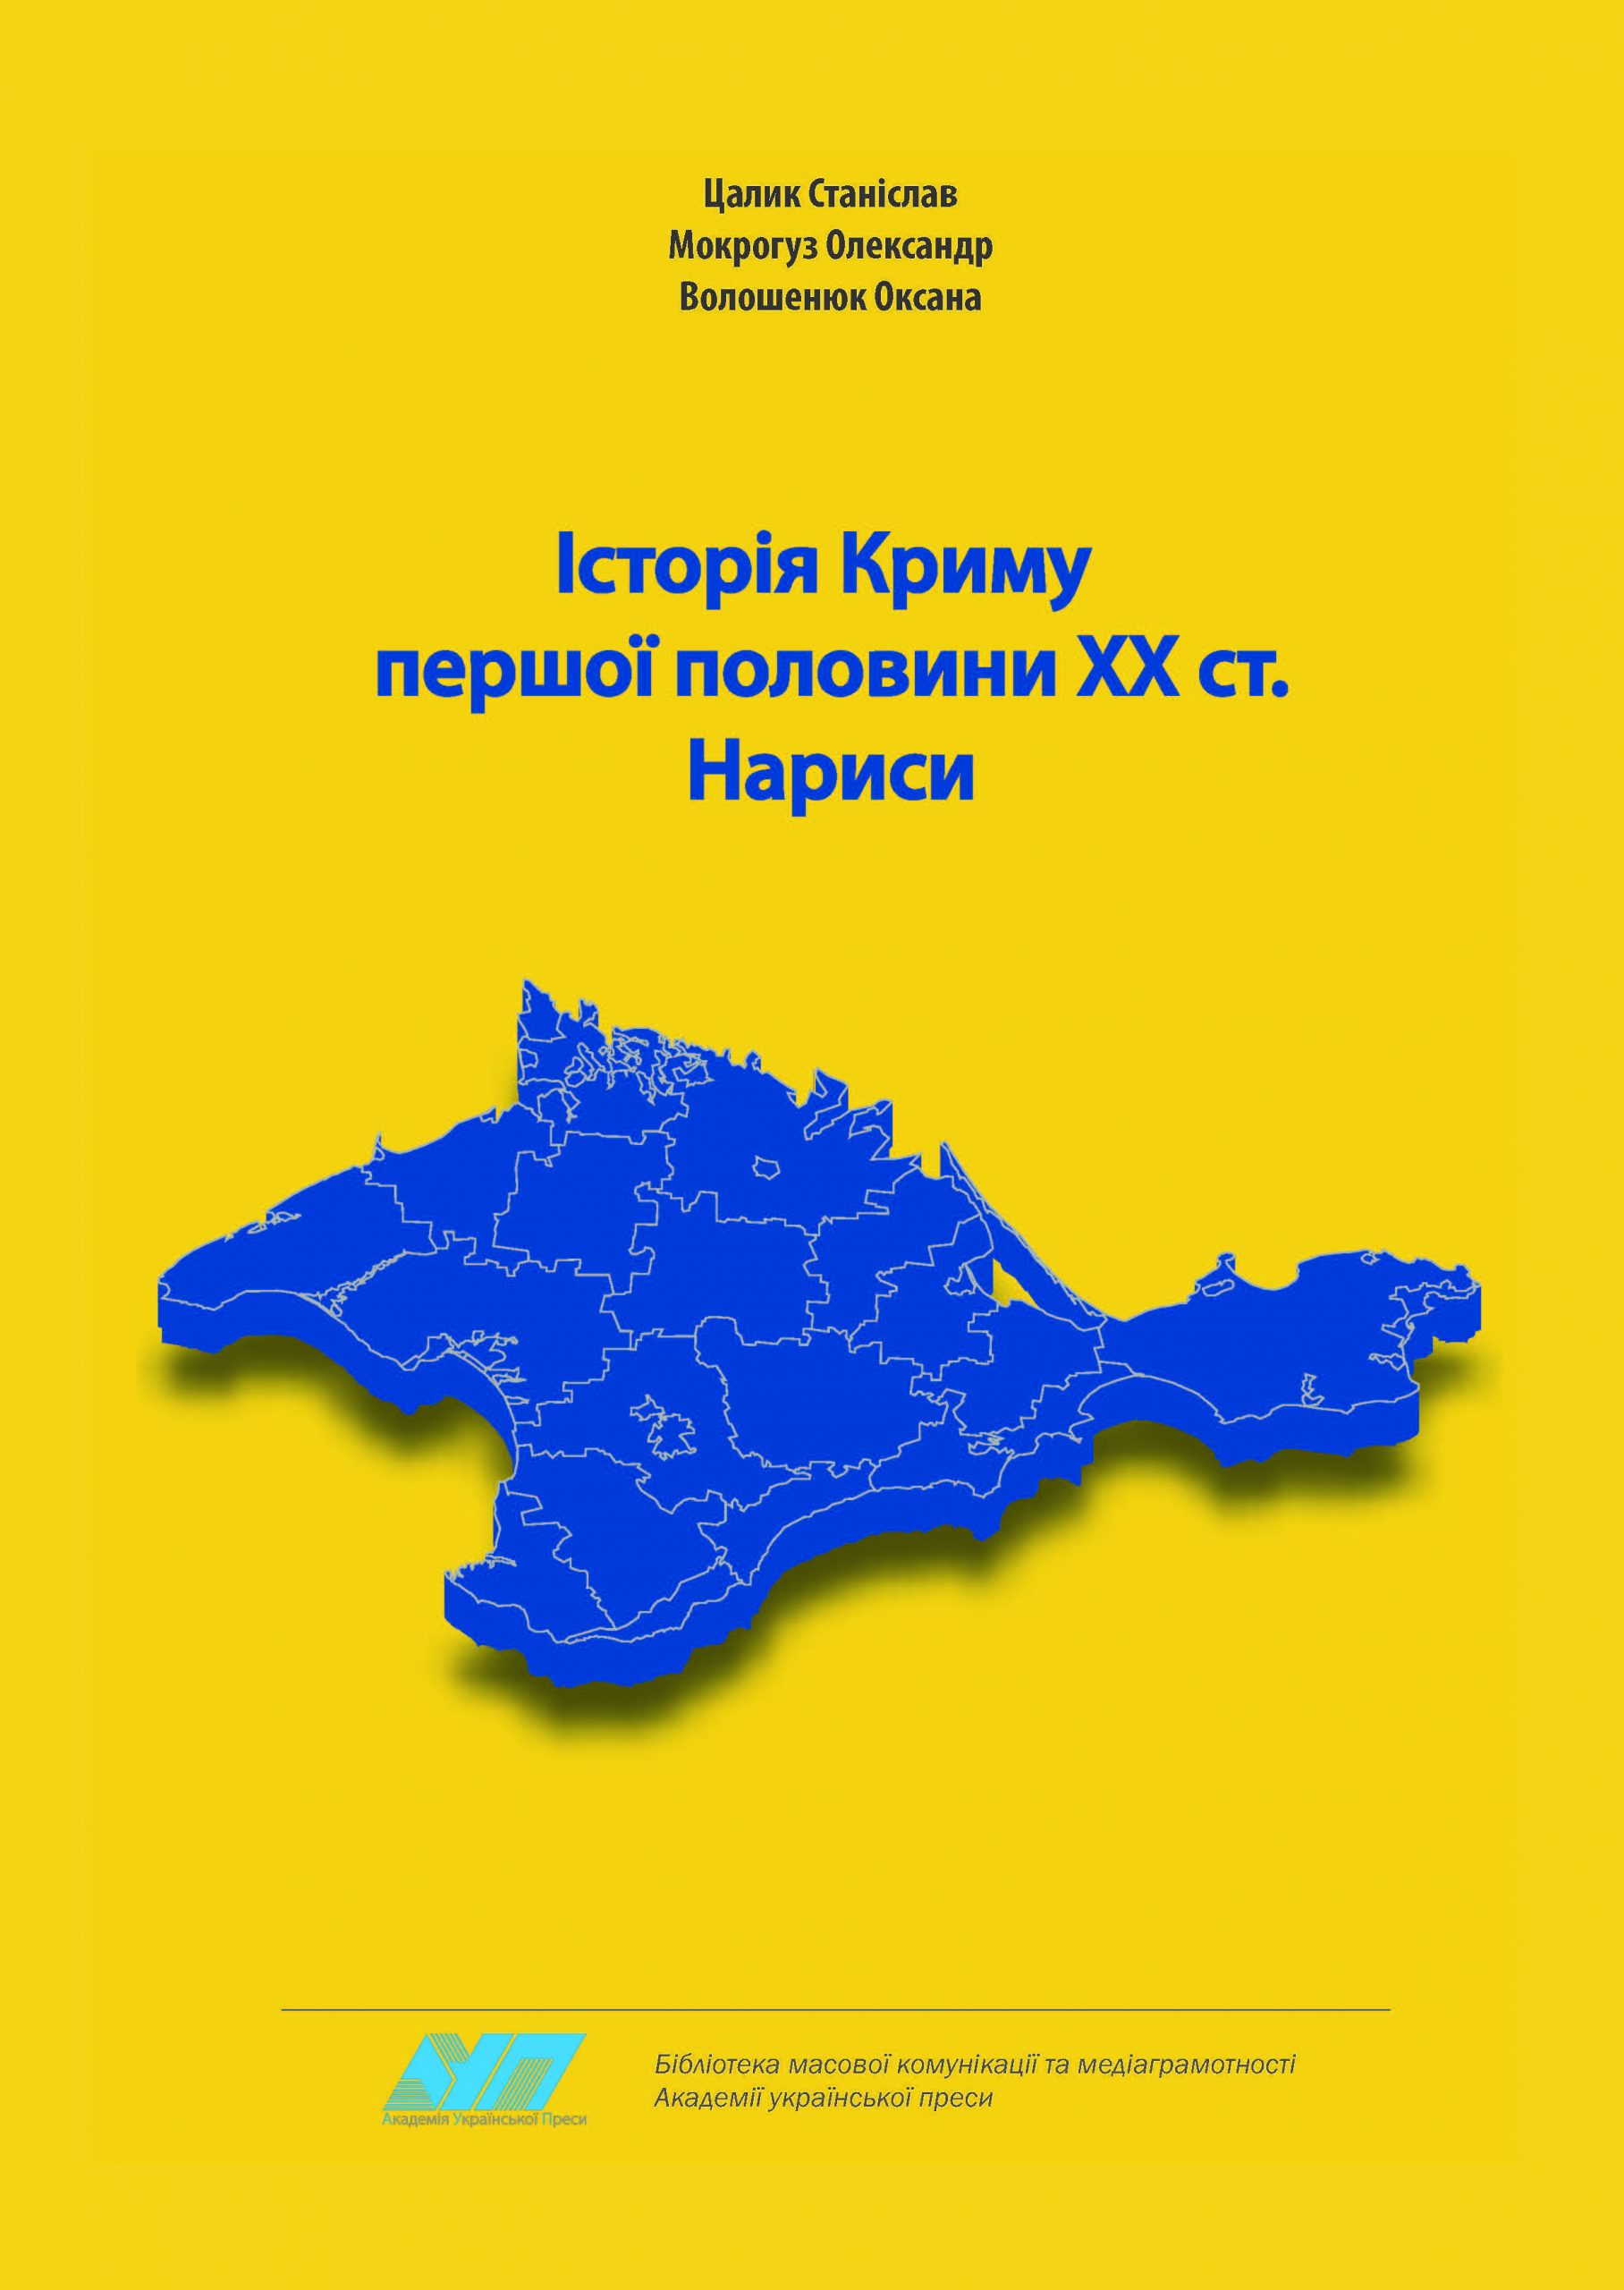 Шкільні знання з історії Криму можна доповнити завдяки новому посібнику – автори